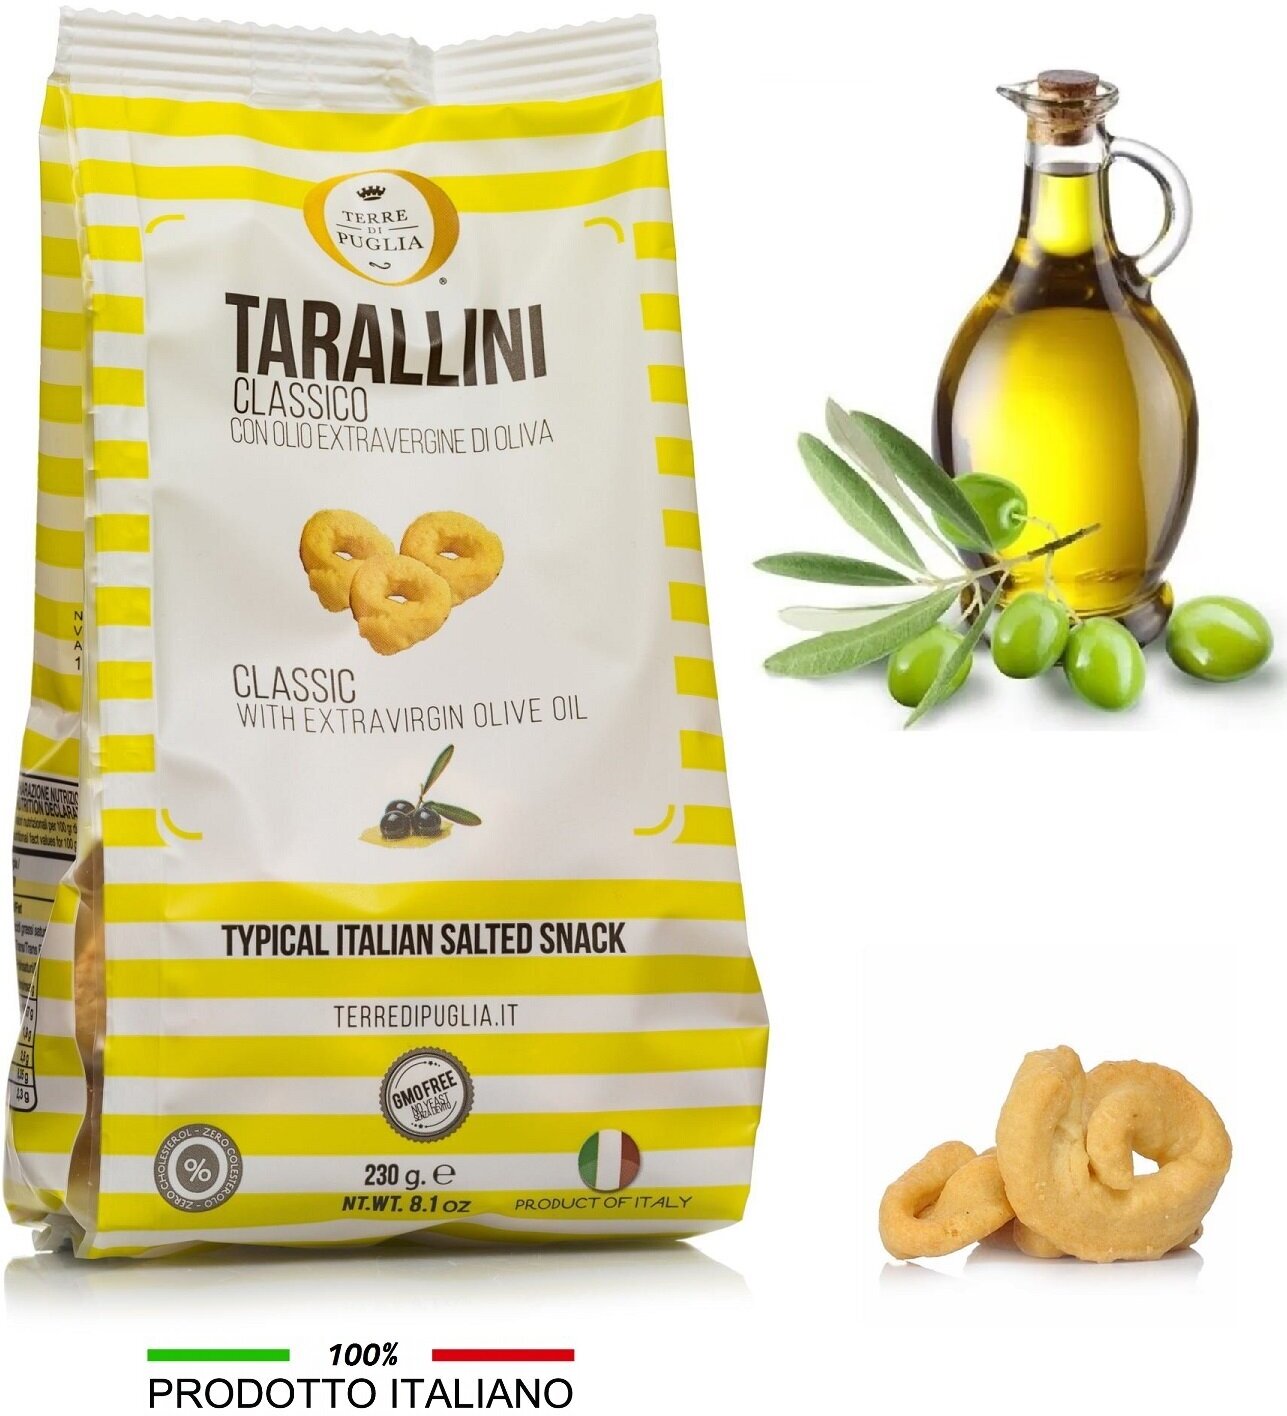 Тараллини Terra di Puglia Классические с оливковым маслом экстра верджине, Италия 230г - фотография № 1